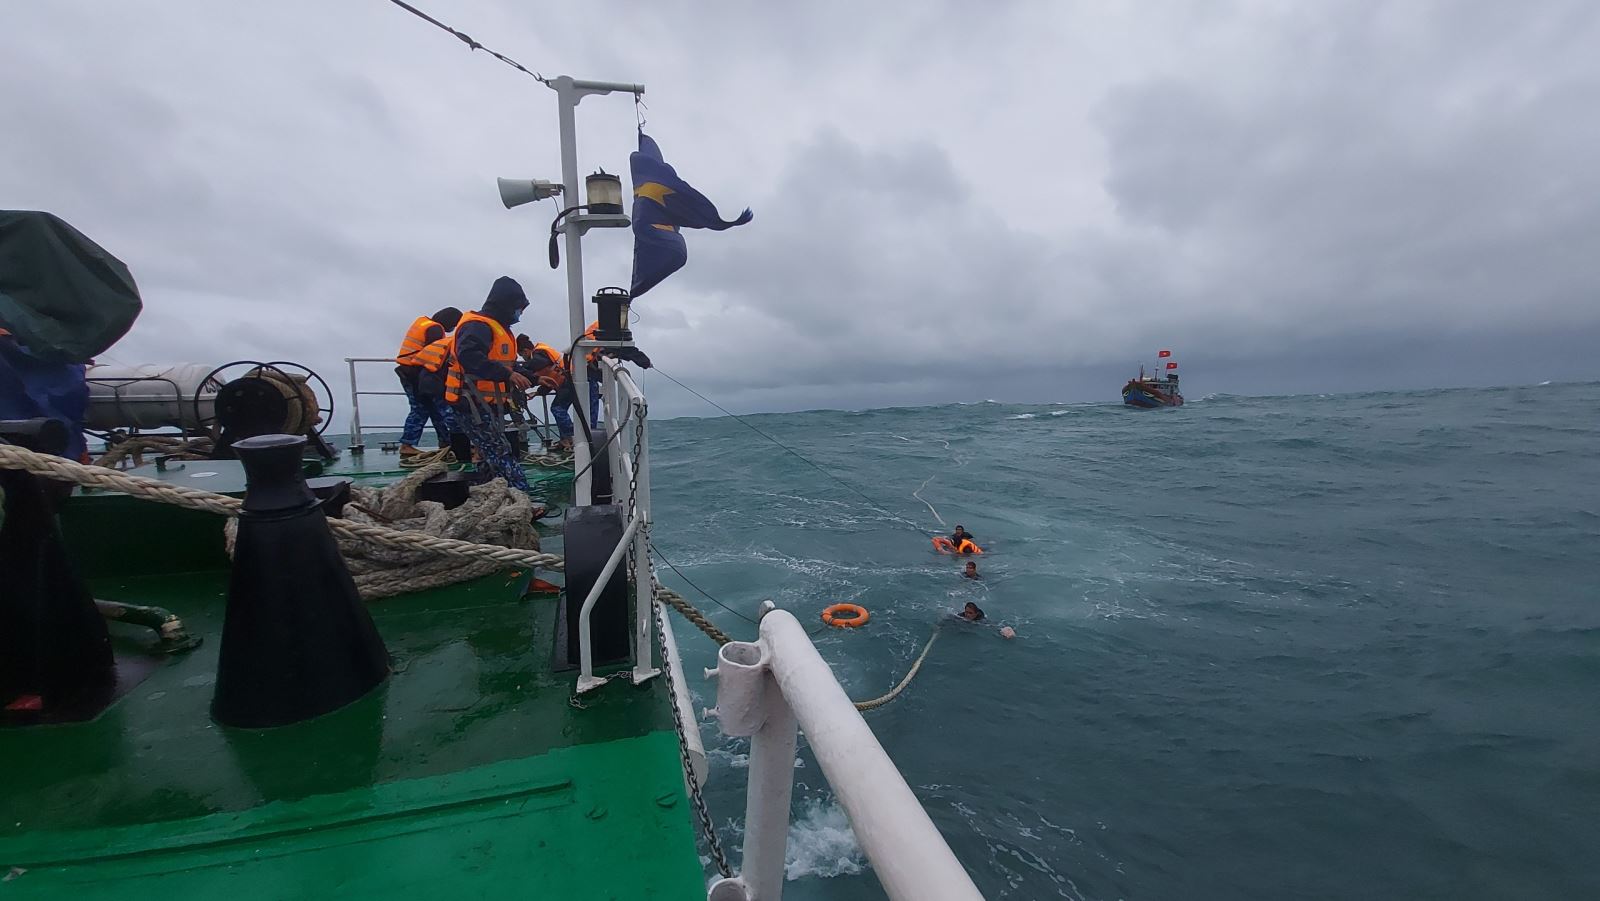 Tàu CSB 4032, Hải đội 212 cứu nạn ngư dân lên tàu để chăm sóc sức khỏe. Ảnh: Phạm Văn Doanh